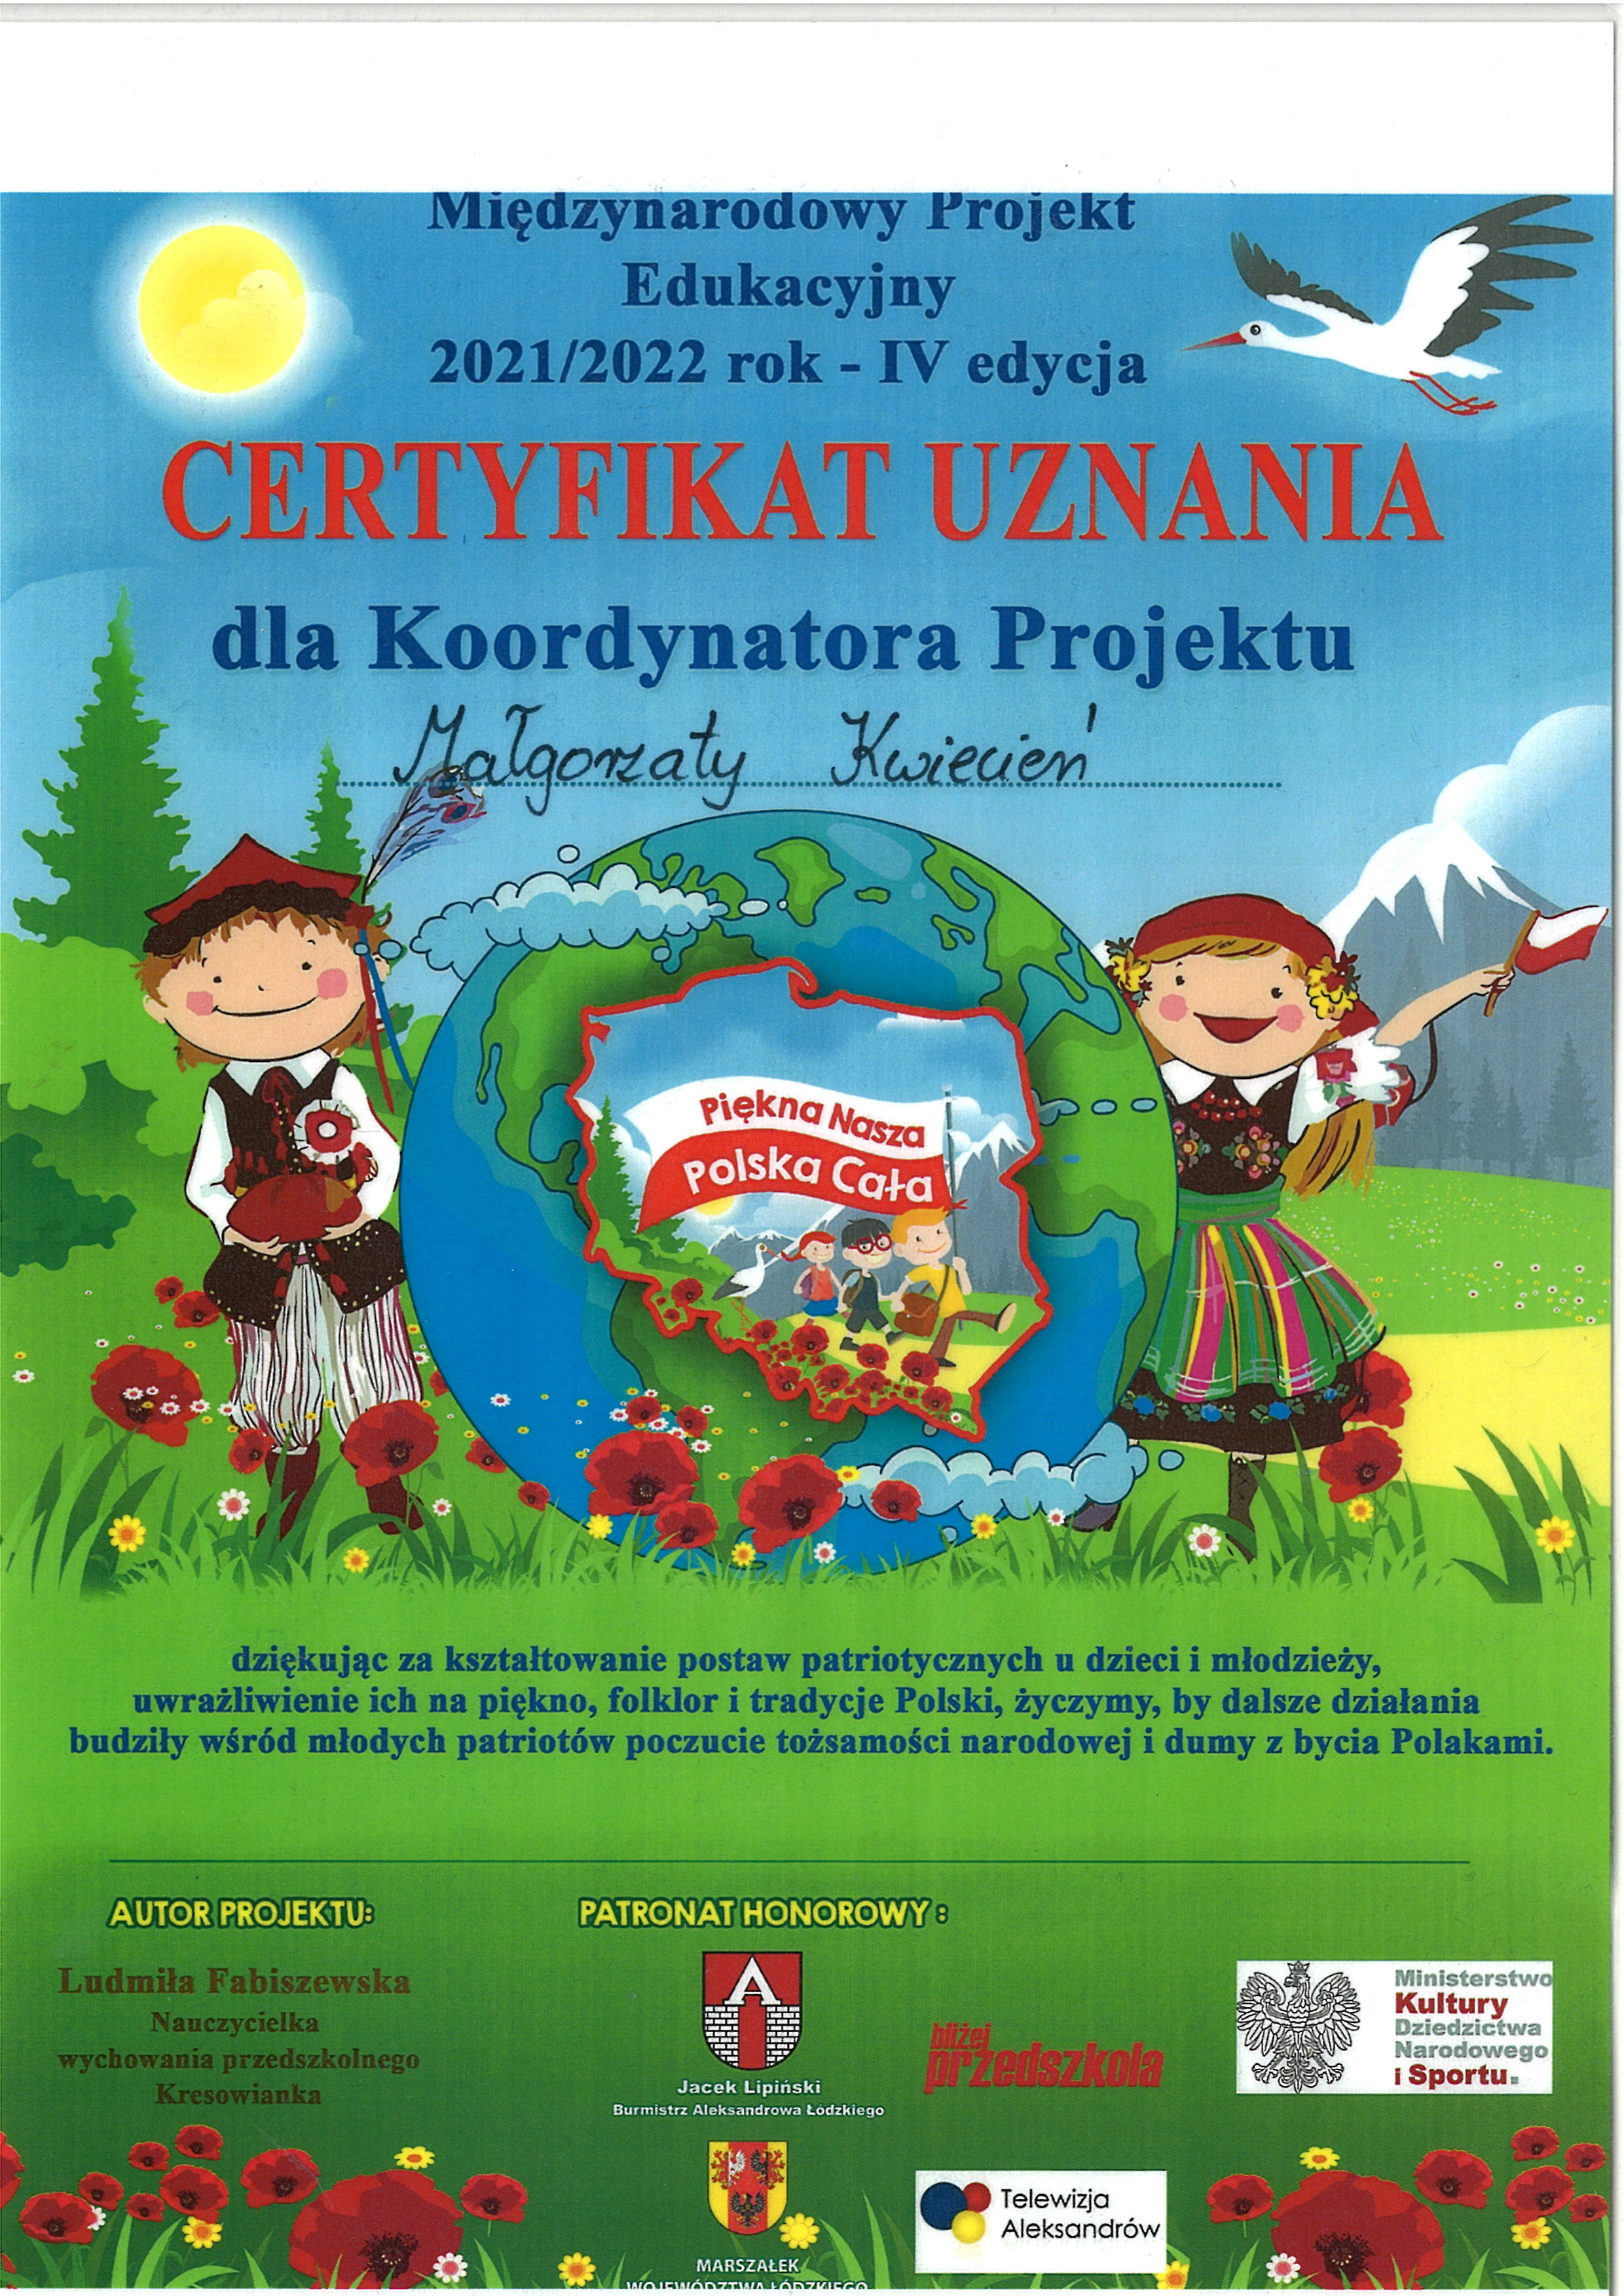 Certyfikat uznania dla koordynatora Małgorzaty Kwiecień w Międzynarodowym Projekcie Piękna Nasza Polska Cała